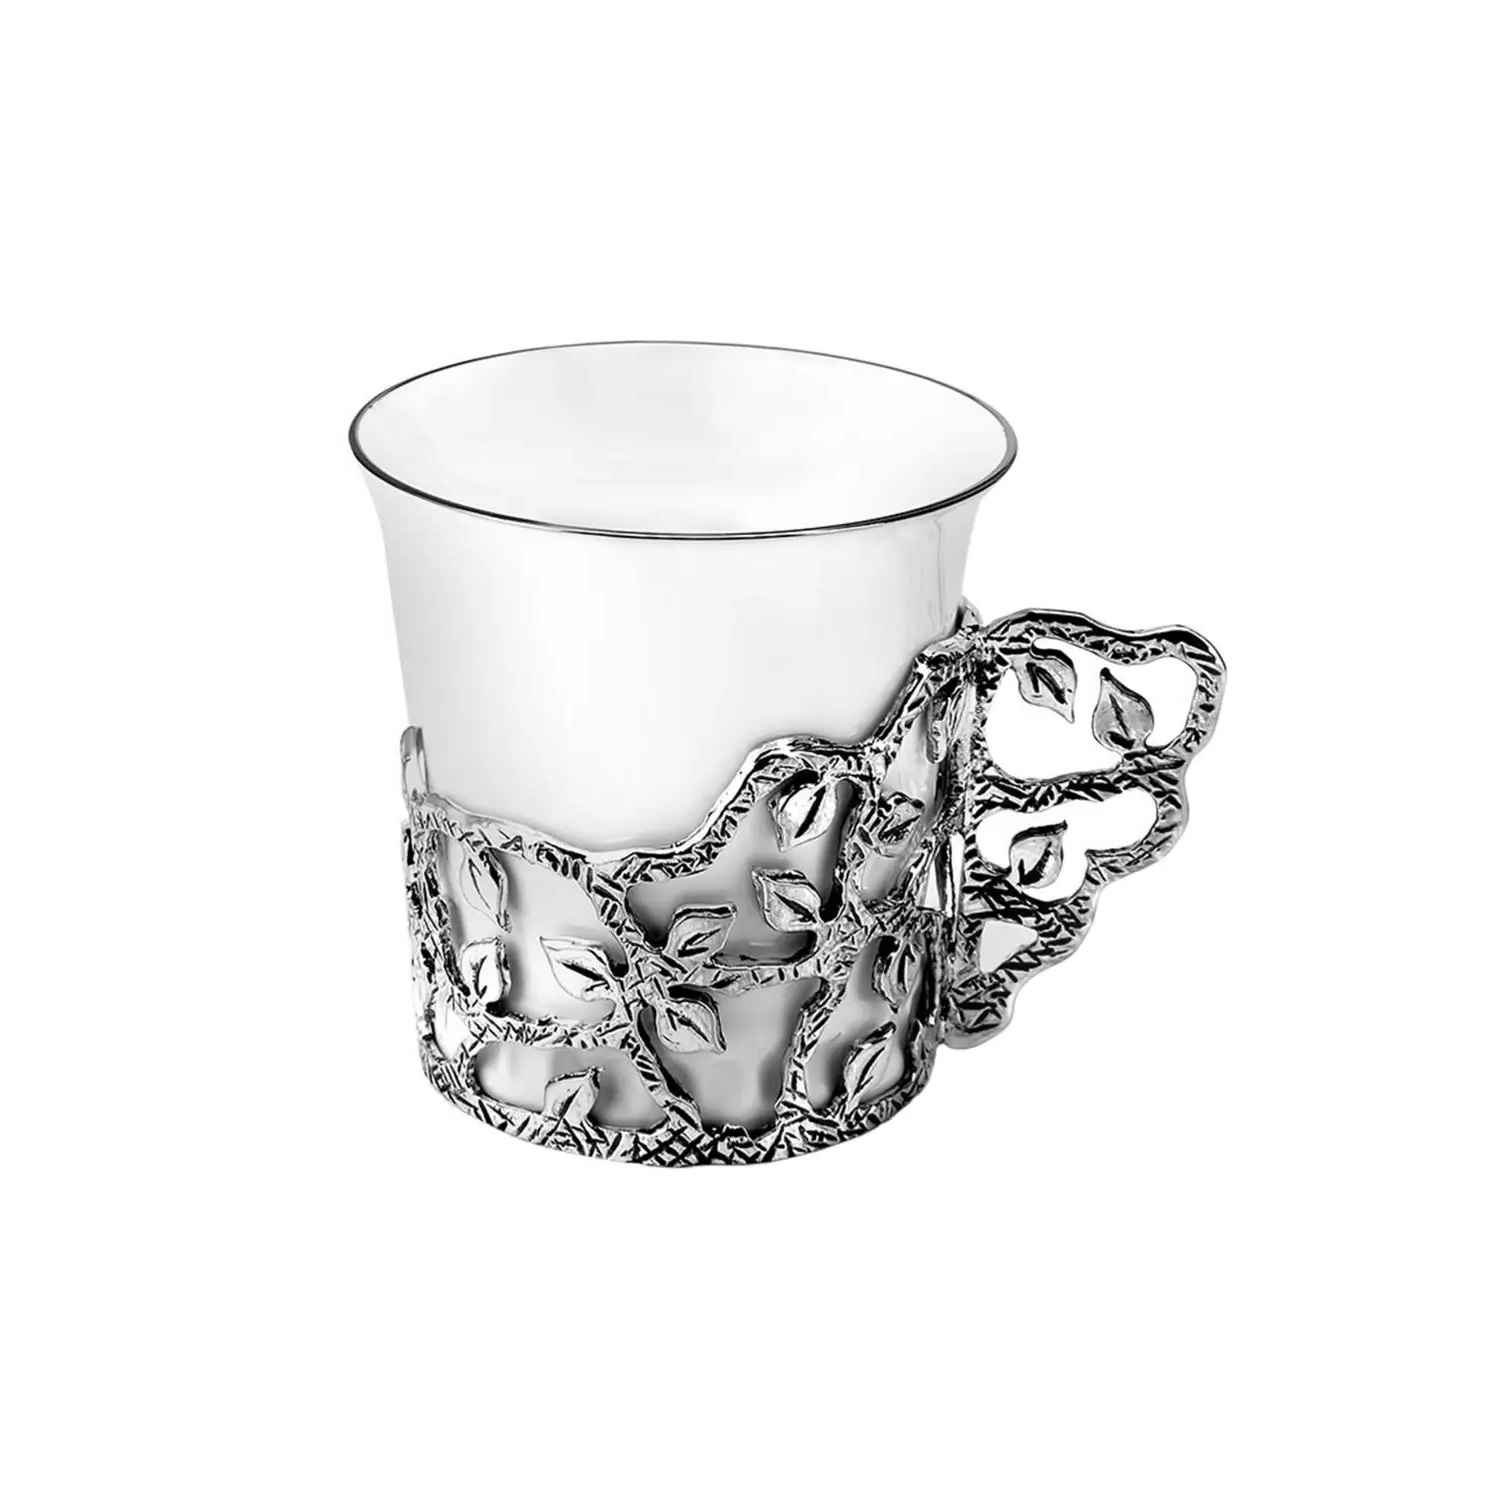 Серебряная кофейная чашка Листопад 